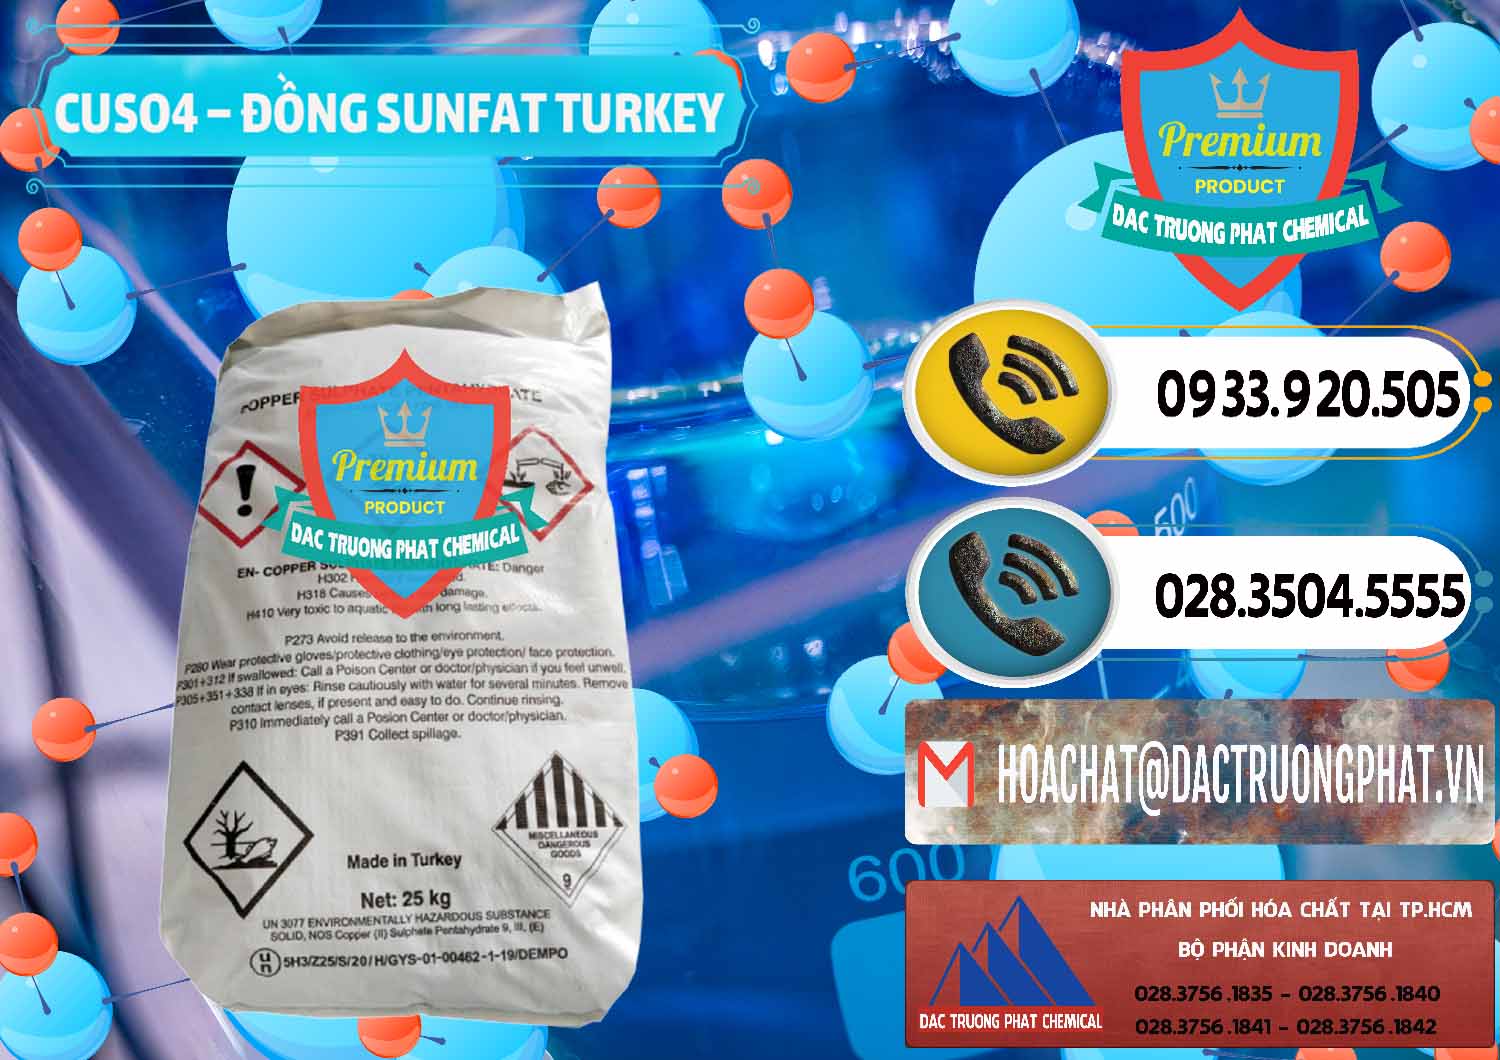 Chuyên bán - cung ứng CuSO4 – Đồng Sunfat Thổ Nhĩ Kỳ Turkey - 0481 - Công ty cung cấp & kinh doanh hóa chất tại TP.HCM - hoachatdetnhuom.vn